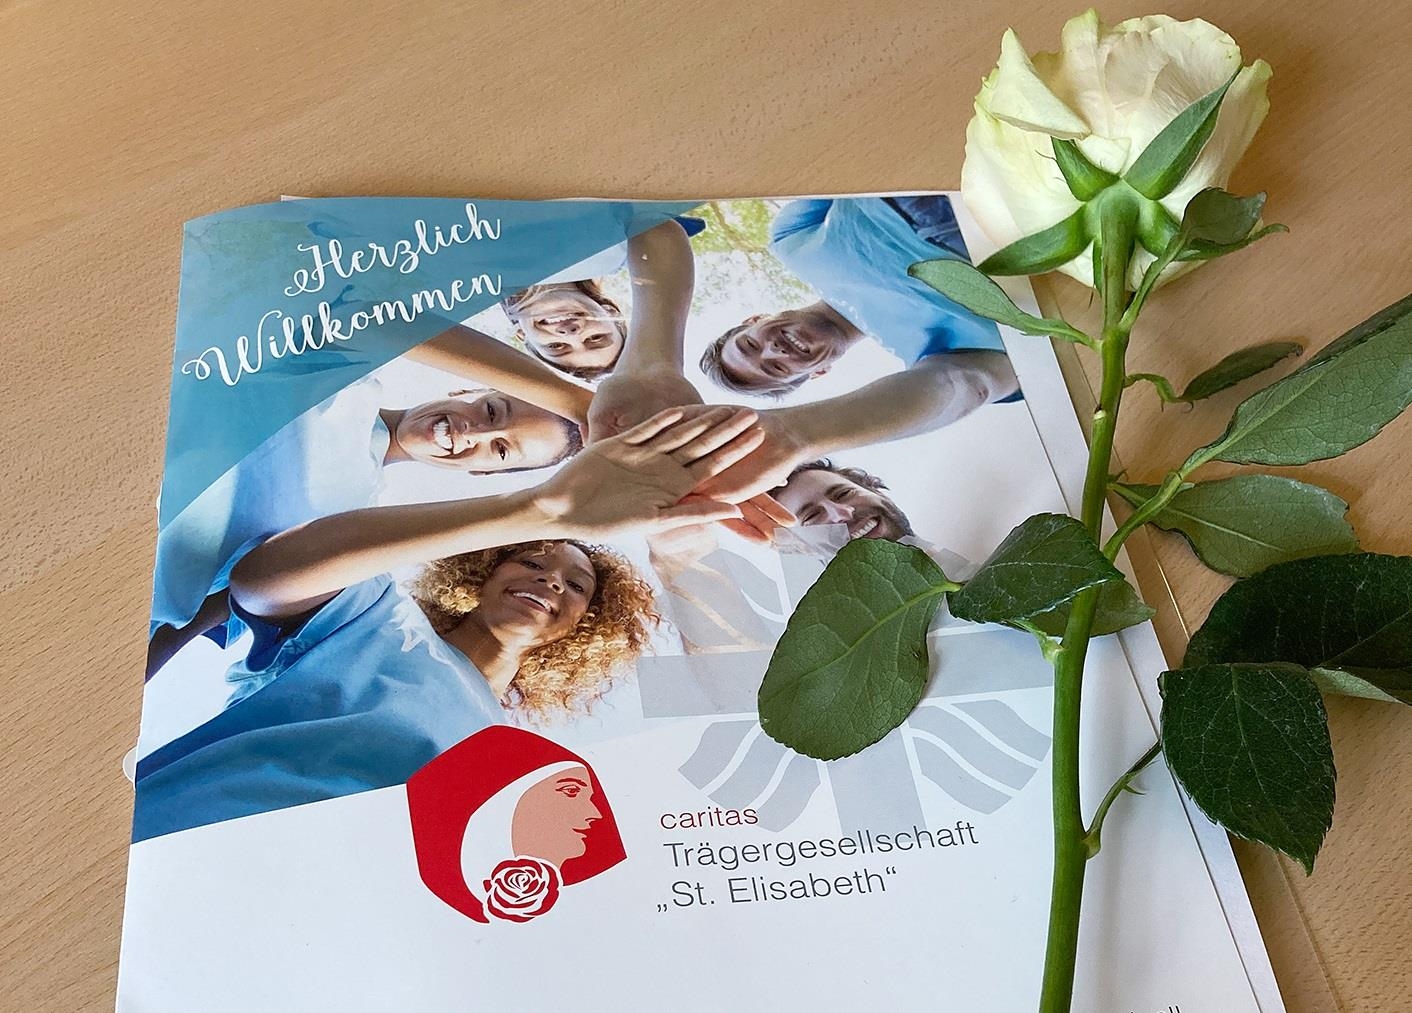 Begrüßungsmappe mit einer Rose (© Caritas Trägergesellschaft "St. Elisabeth" gGmbH)